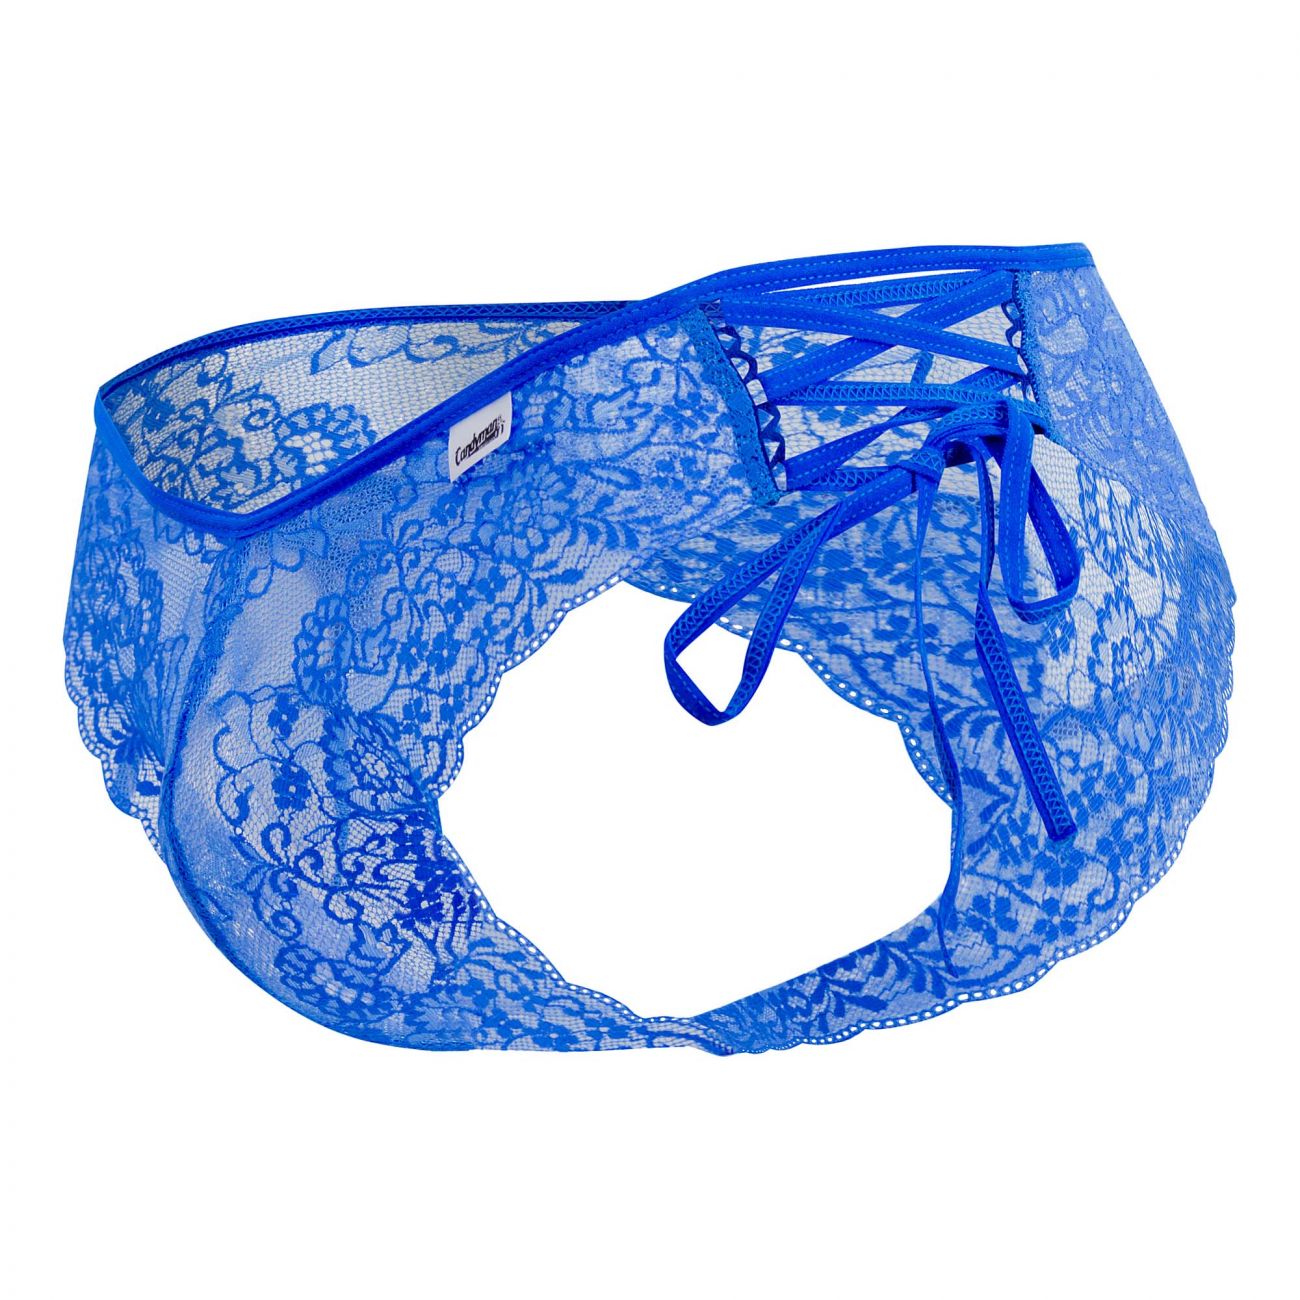 JCSTK - CandyMan 99488 Side Tie Lace Bikini Royal Blue